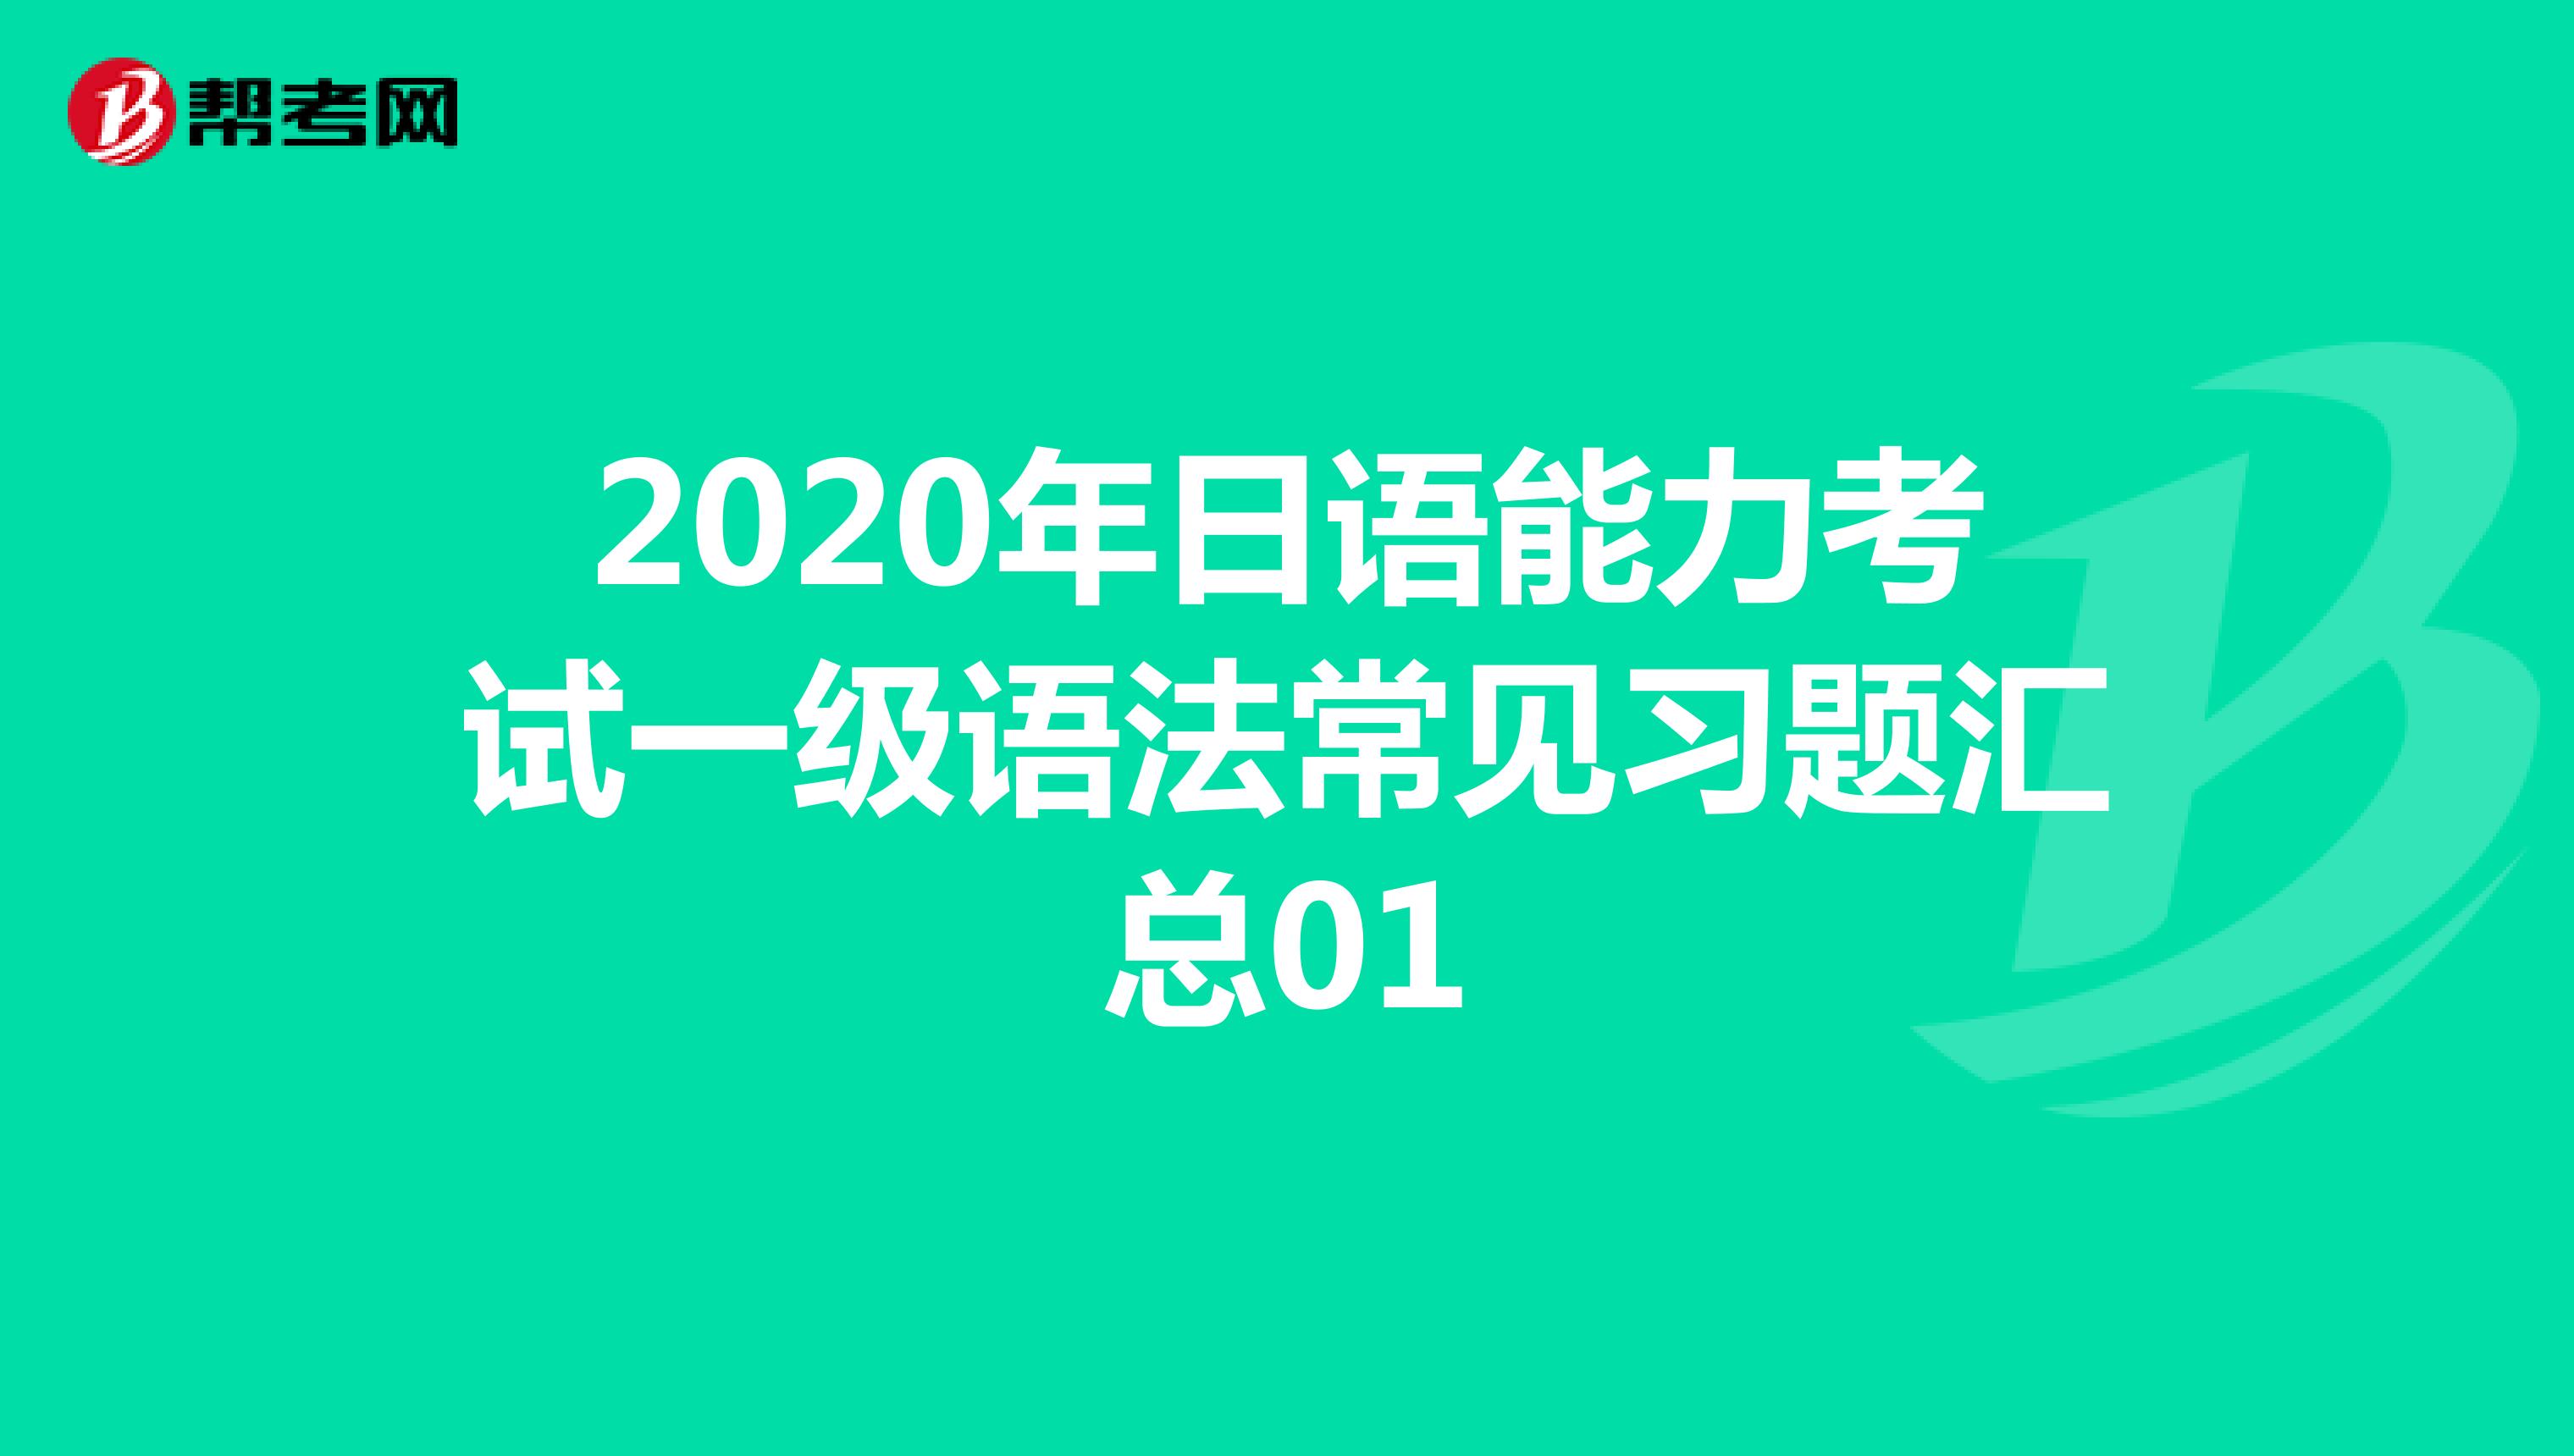 2020年日语能力考试一级语法常见习题汇总01